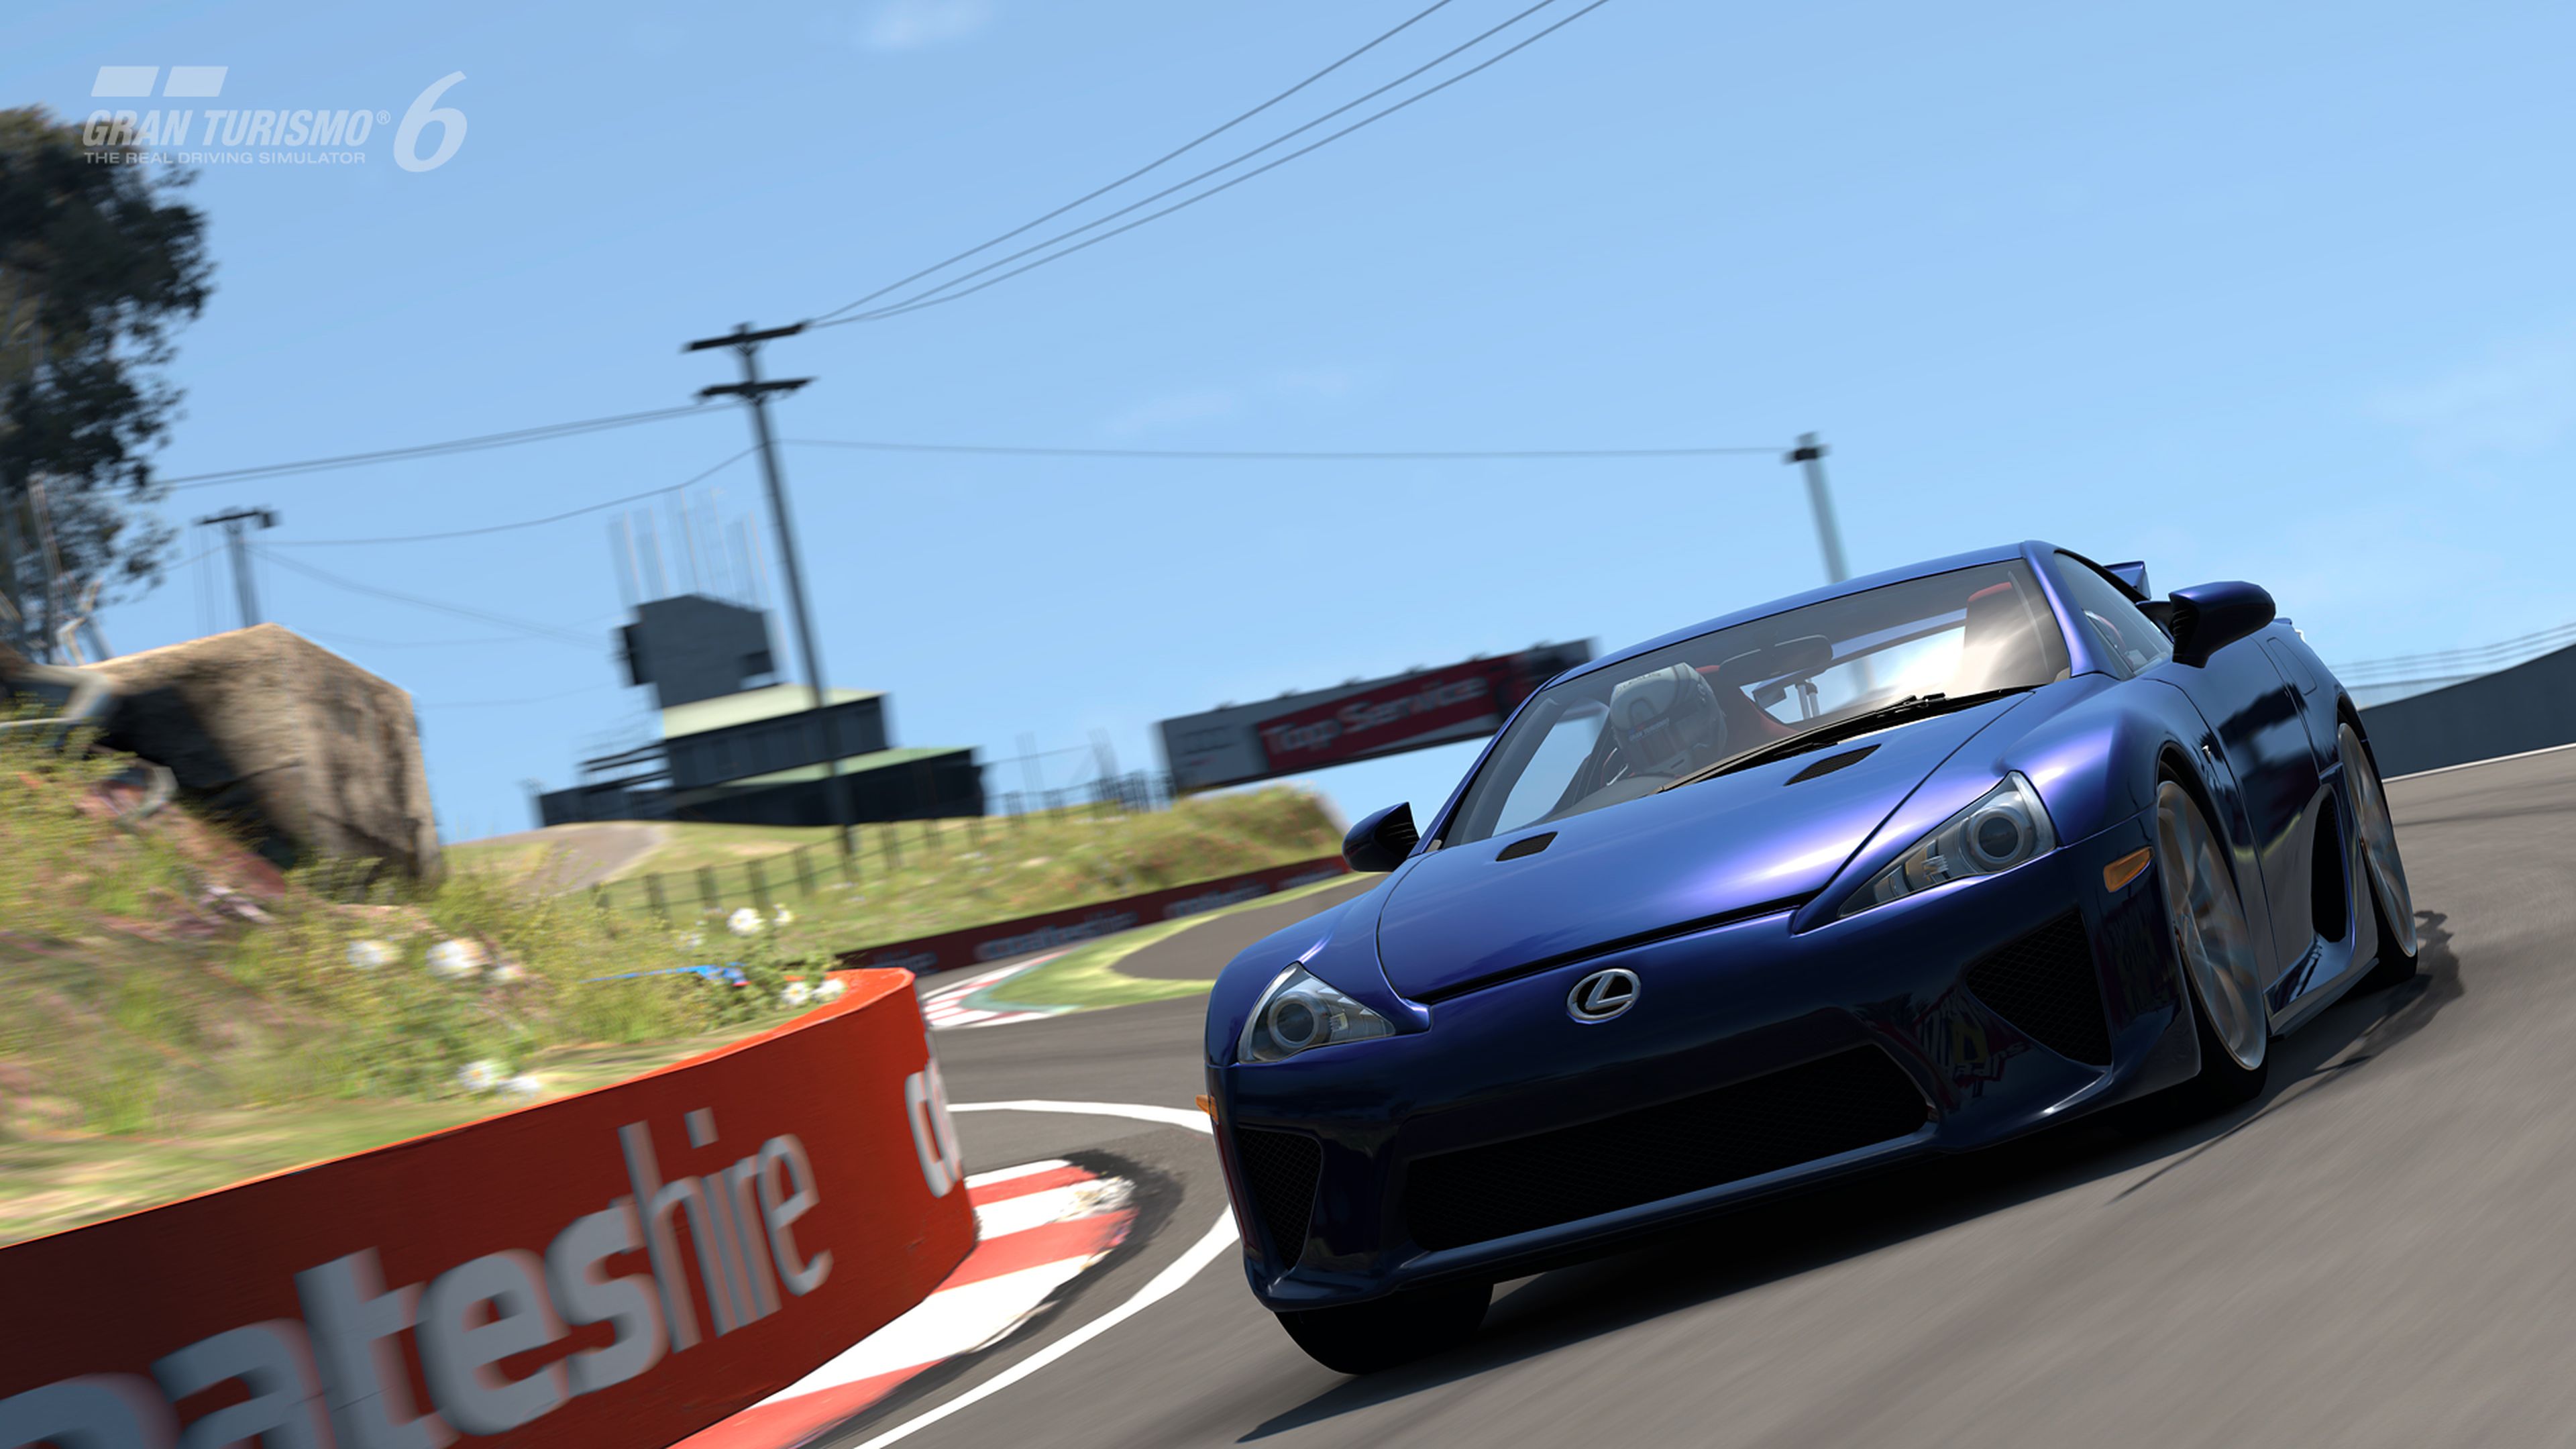 Avance de Gran Turismo 6 para PS3